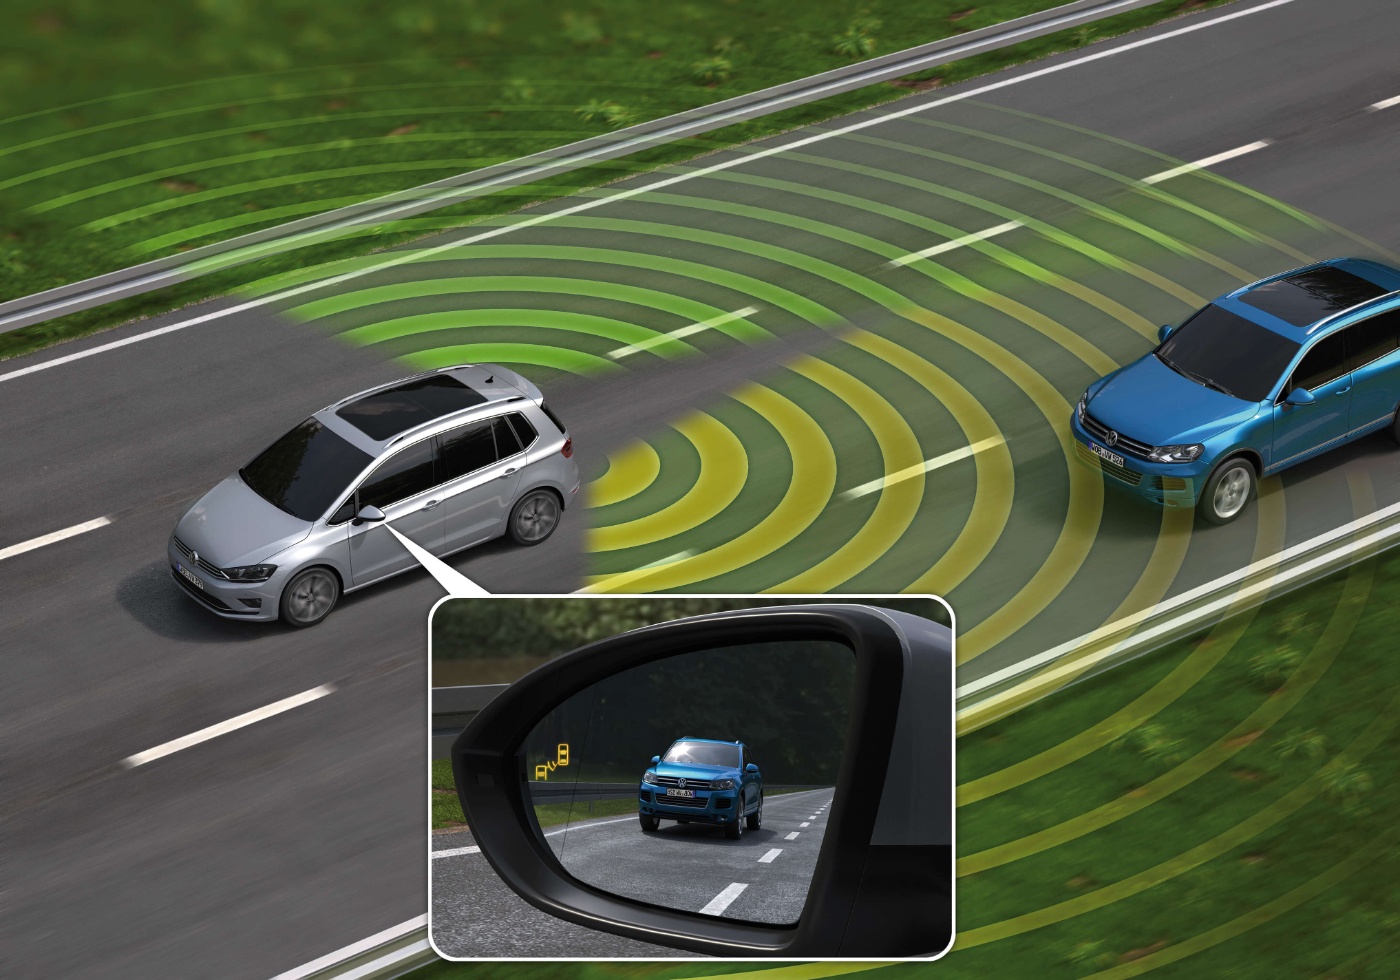 Mit dem Totwinkel-Assistent können Autofahrer auf überholende Fahrzeuge aufmerksam gemacht werden. © BMW 